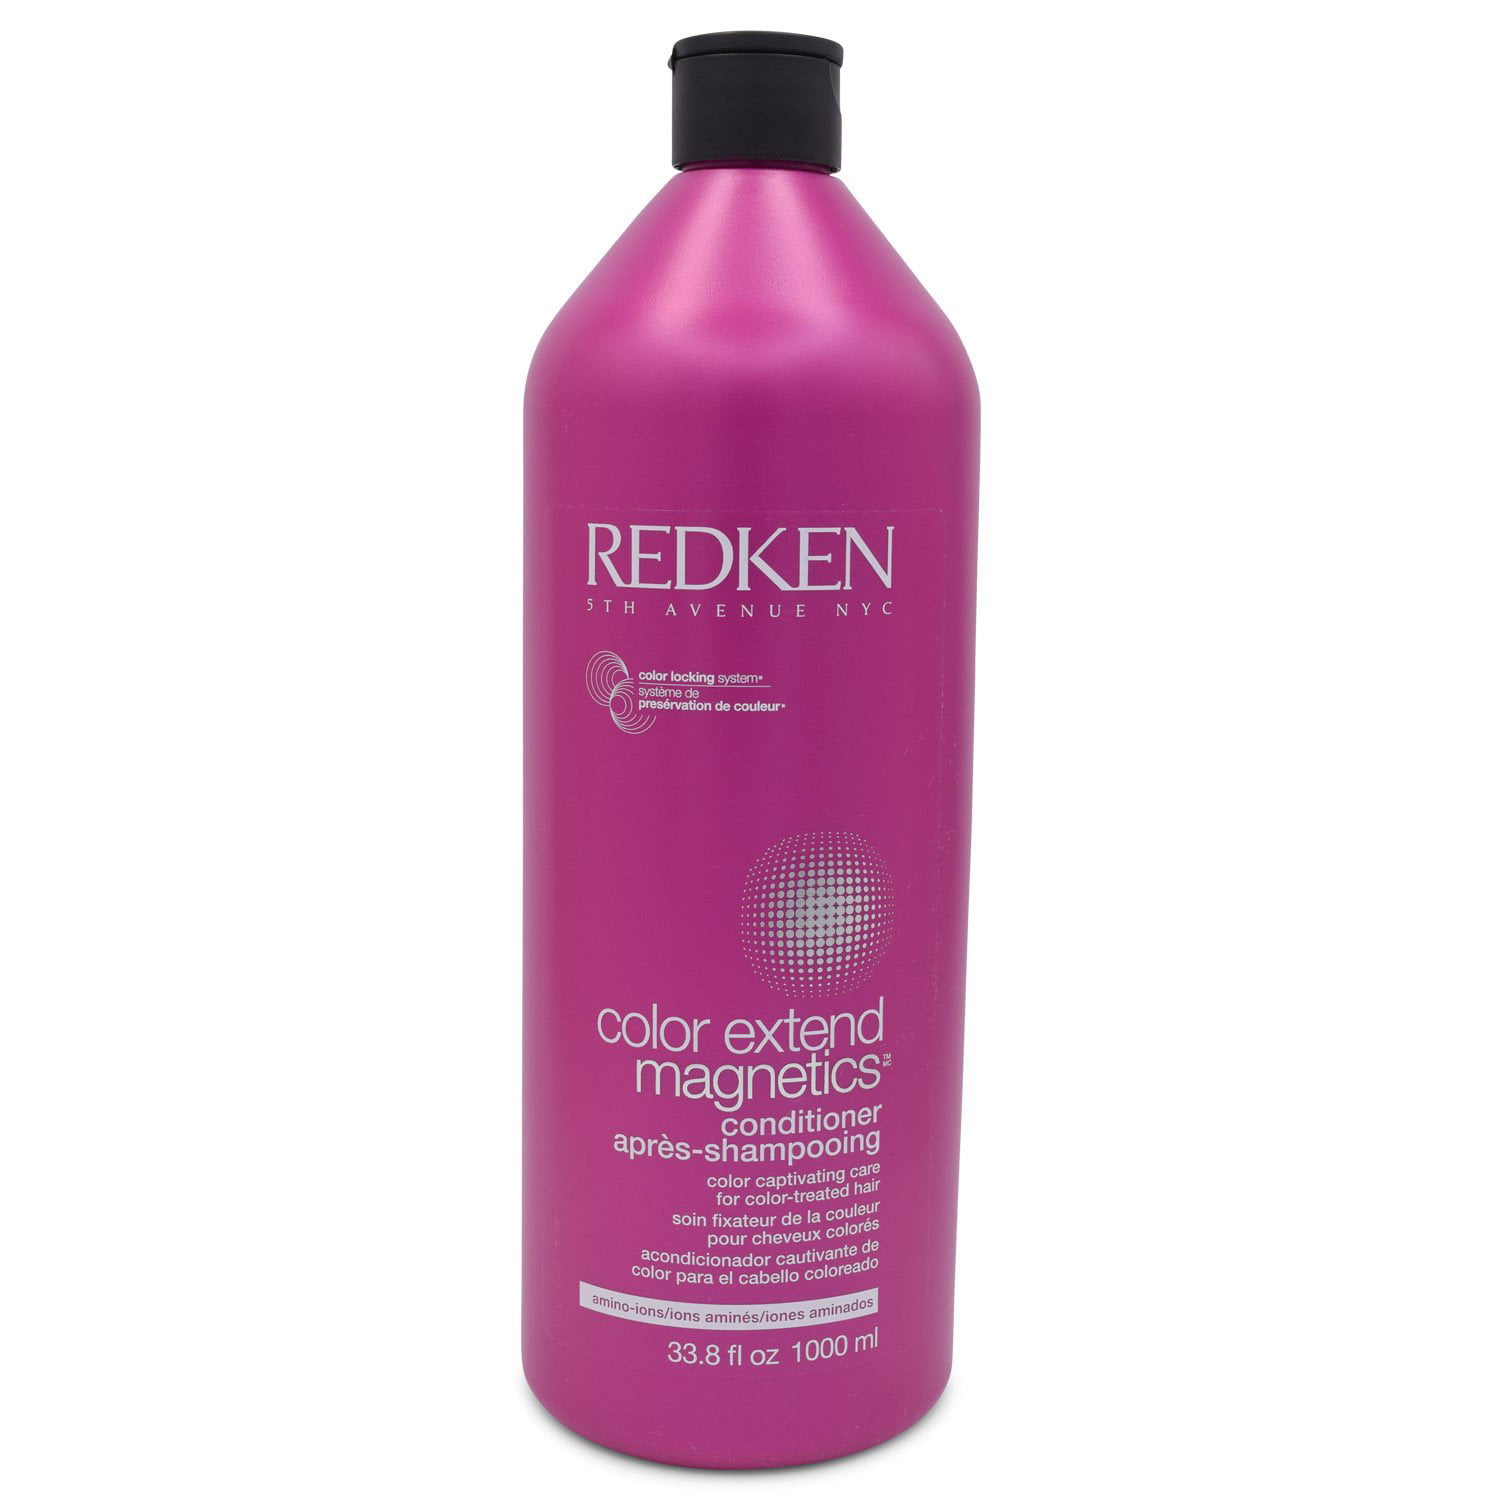 Redken - Redken Color Extend Magnetics Conditioner, 33.8 Fl Oz ...